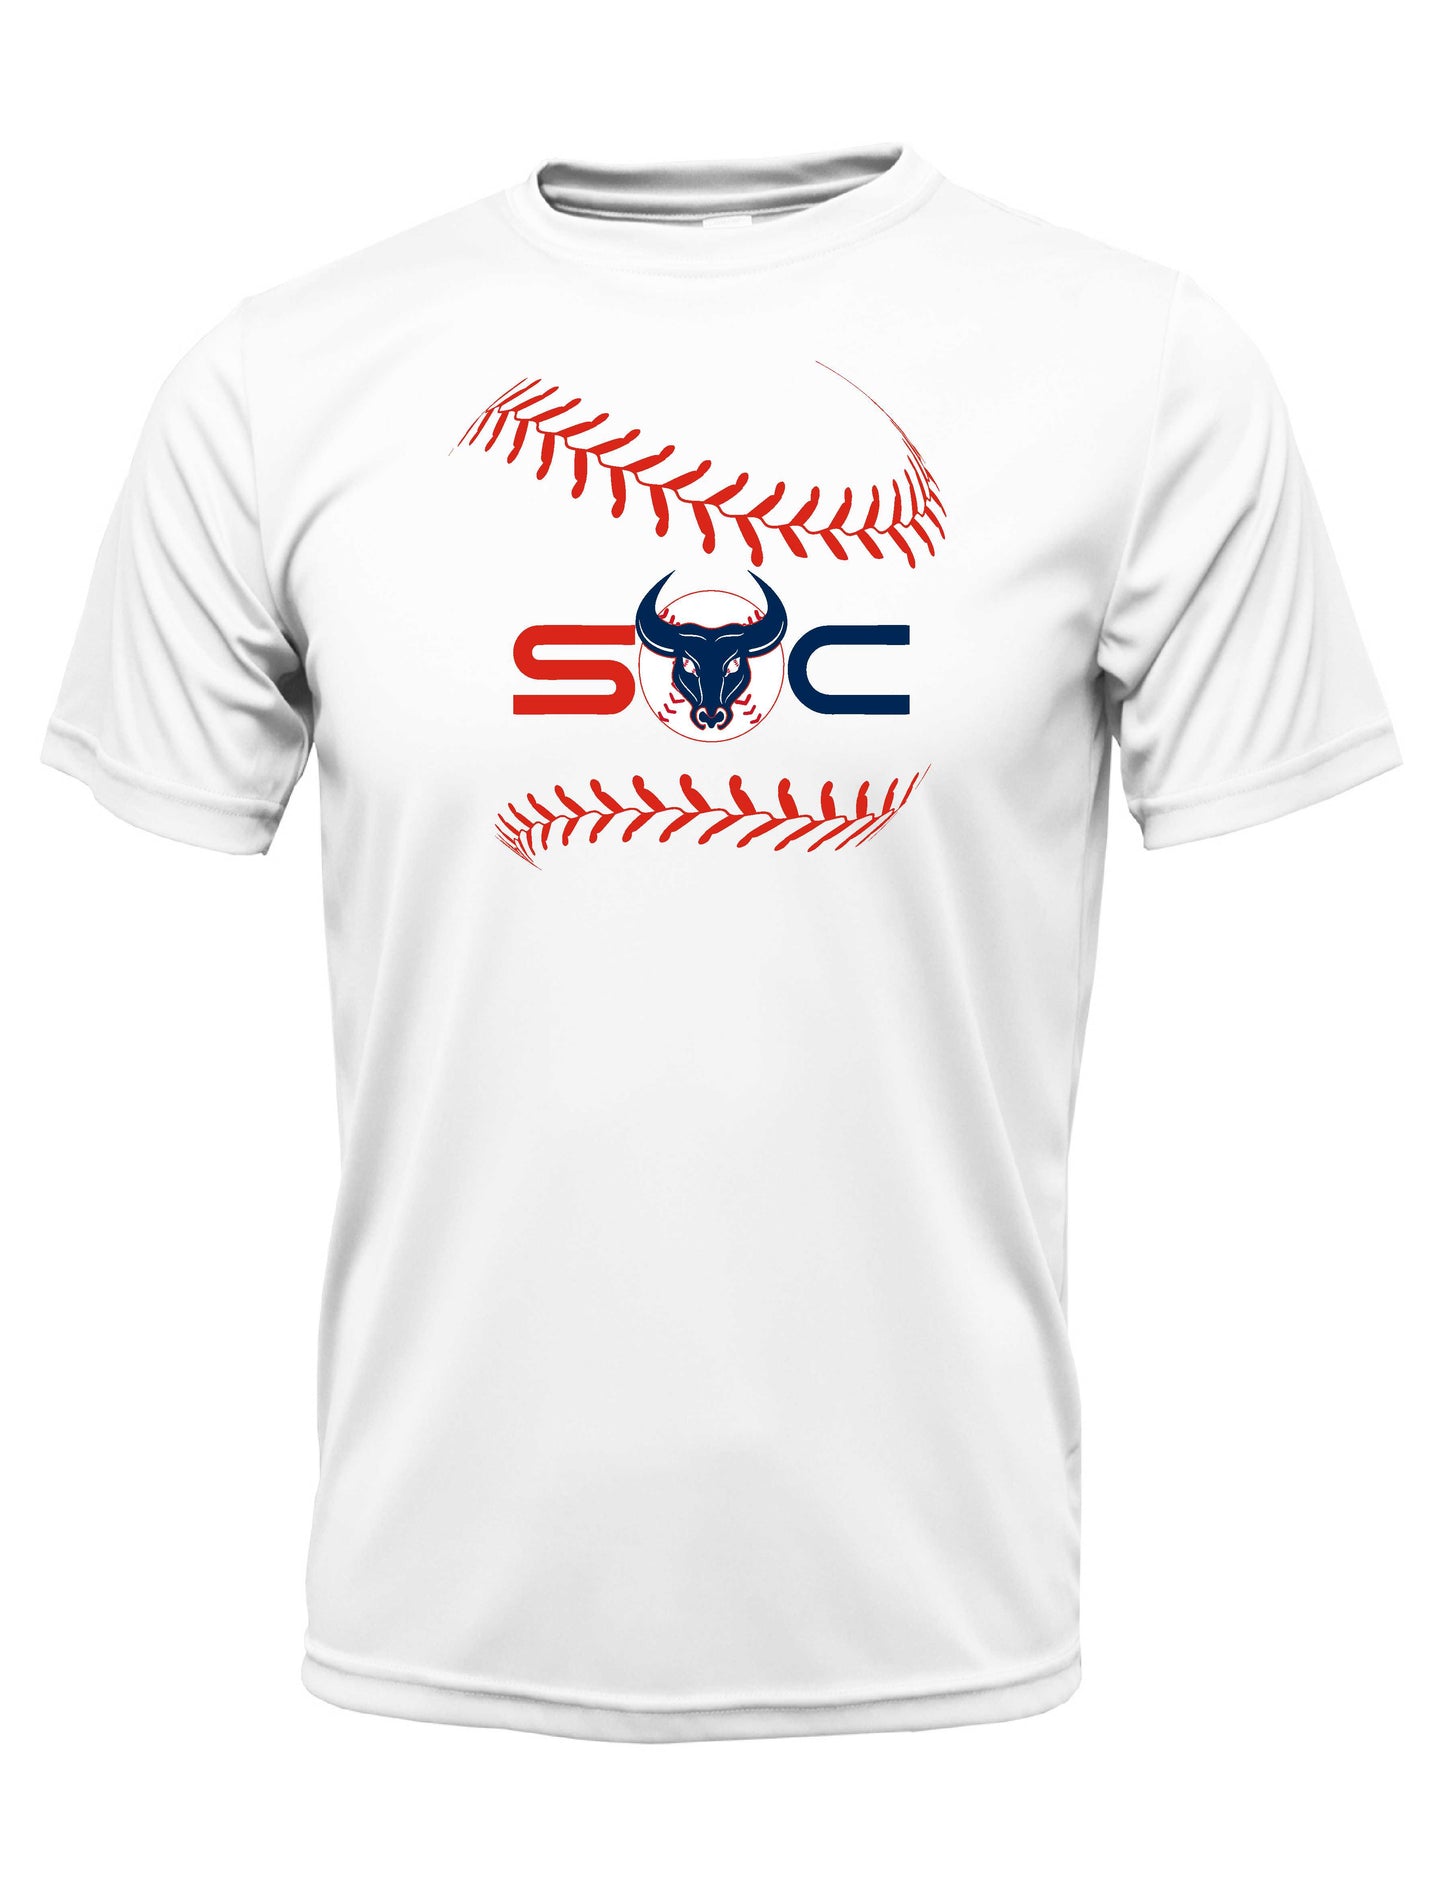 SC "Laces" Dri-fit T-shirt